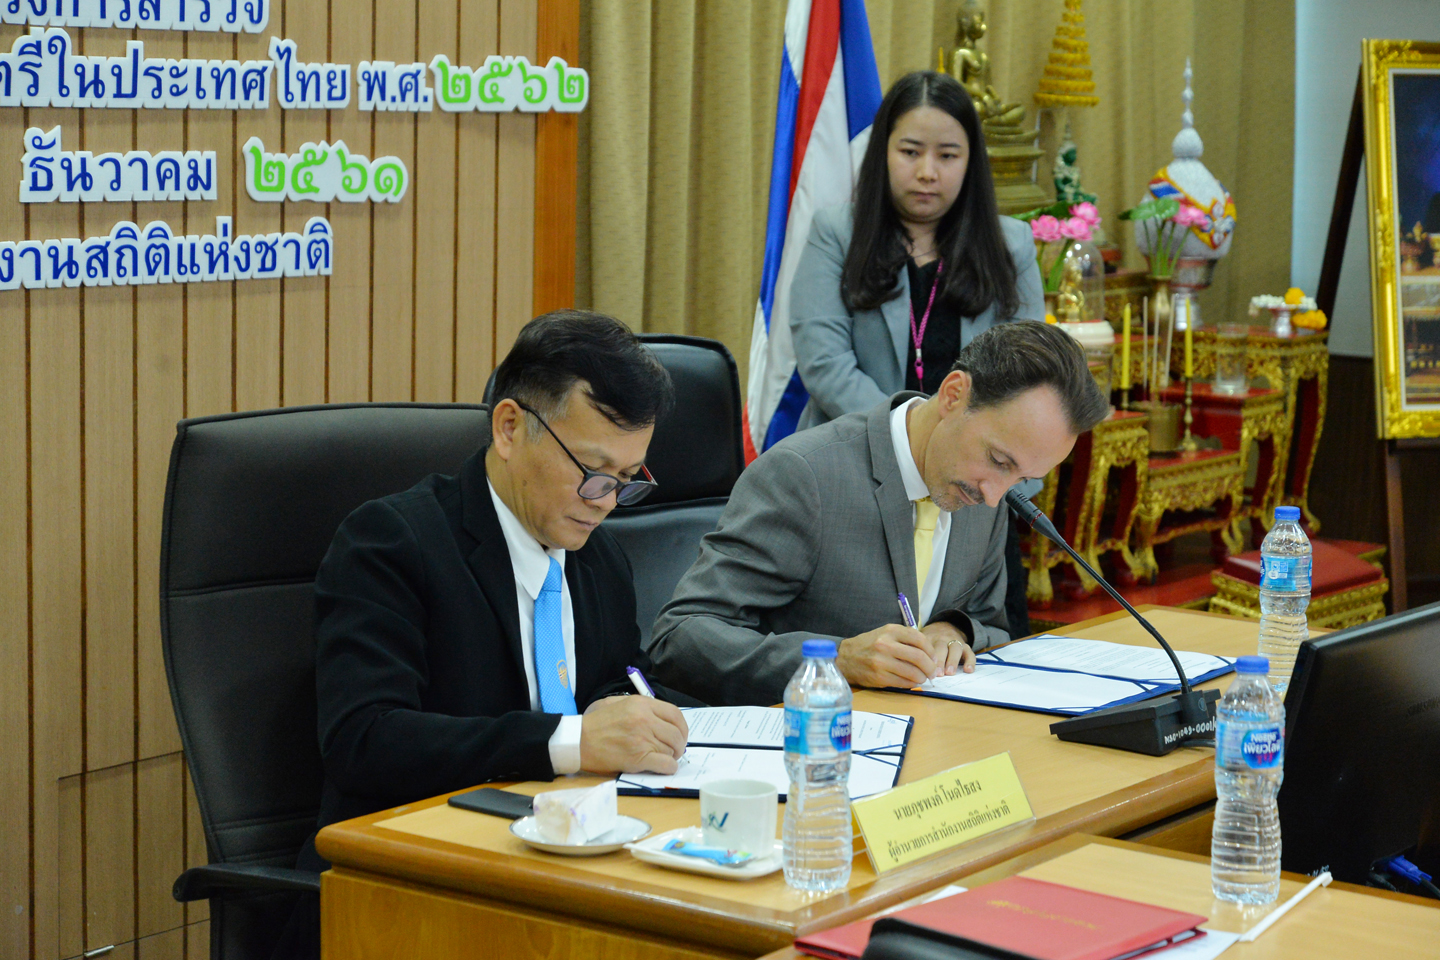  สำนักงานสถิติฯ ร่วมกับองค์การยูนิเซฟประเทศไทย สำรวจสถานการณ์เด็กและสตรีในประเทศไทย พ.ศ. 2562